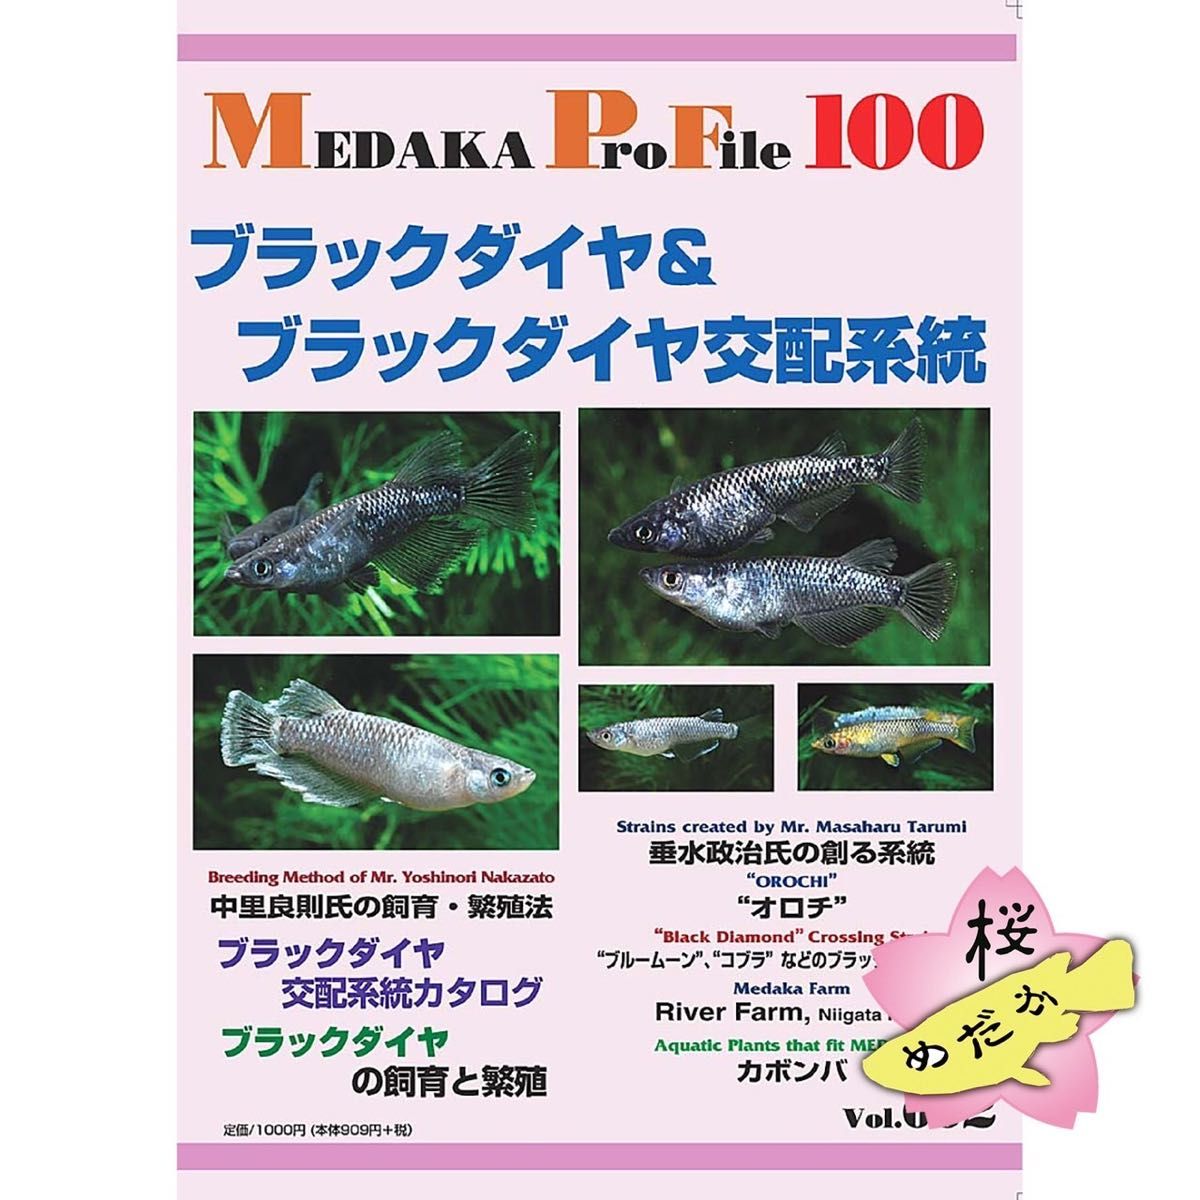 ブラックダイヤ & ブラックダイヤ交配系統 Medaka Pro File 2